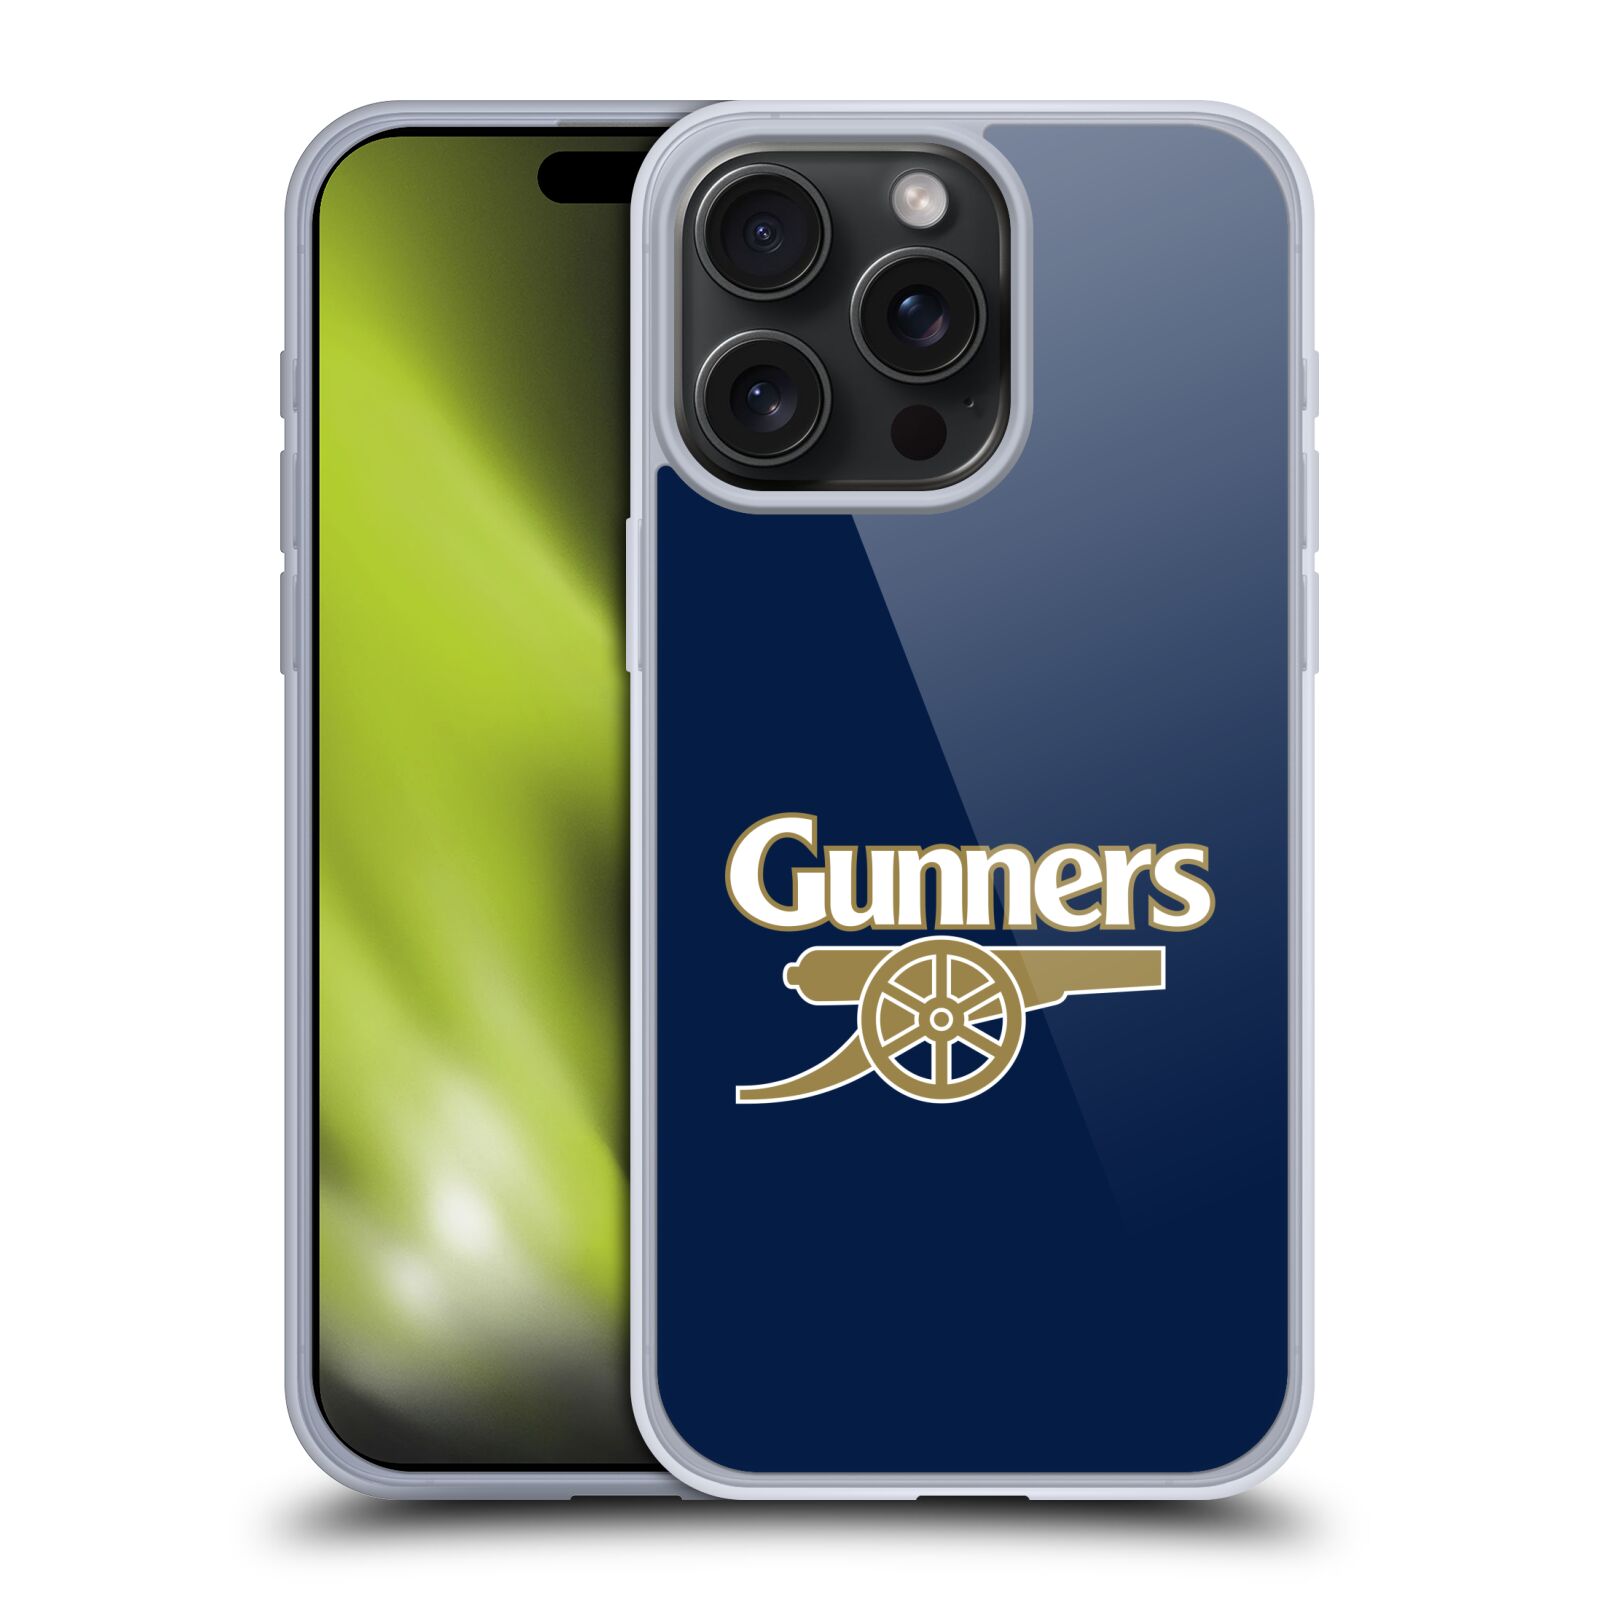 Silikonové lesklé pouzdro na mobil Apple iPhone 15 Pro Max - Head Case - Arsenal FC - Gunners (Silikonový lesklý kryt, obal, pouzdro na mobilní telefon s motivem klubu Arsenal FC - Gunners pro Apple iPhone 15 Pro Max)